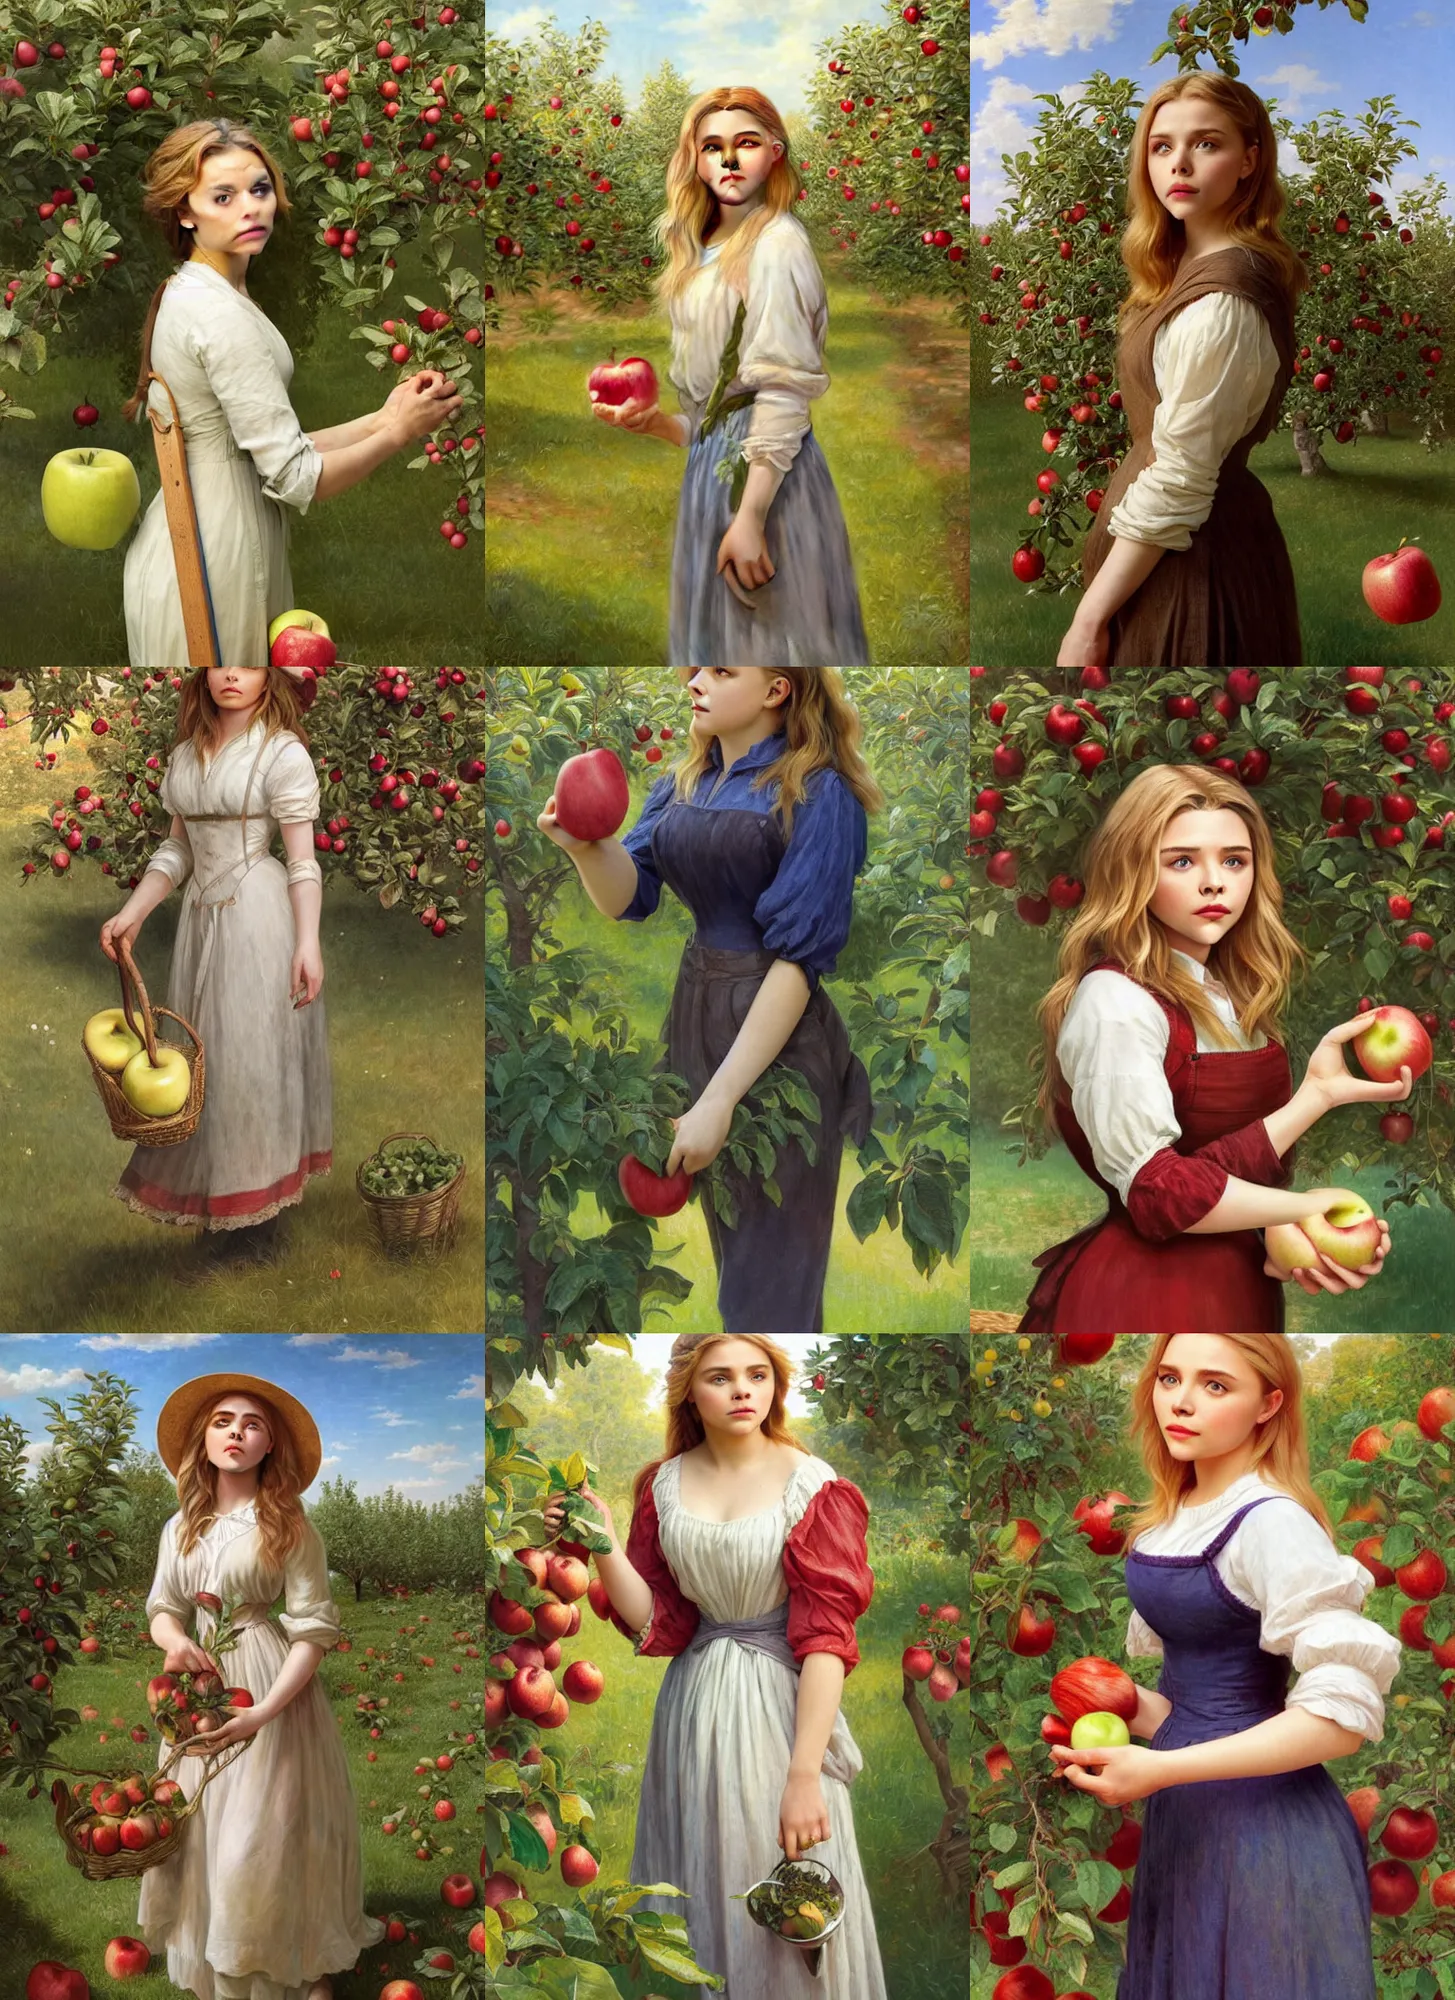 Prompt: portrait chloe moretz as gardener eating apple in apple orchard, full length shot, shining, 8k highly detailed, sharp focus, illustration, art by artgerm, mucha, bouguereau